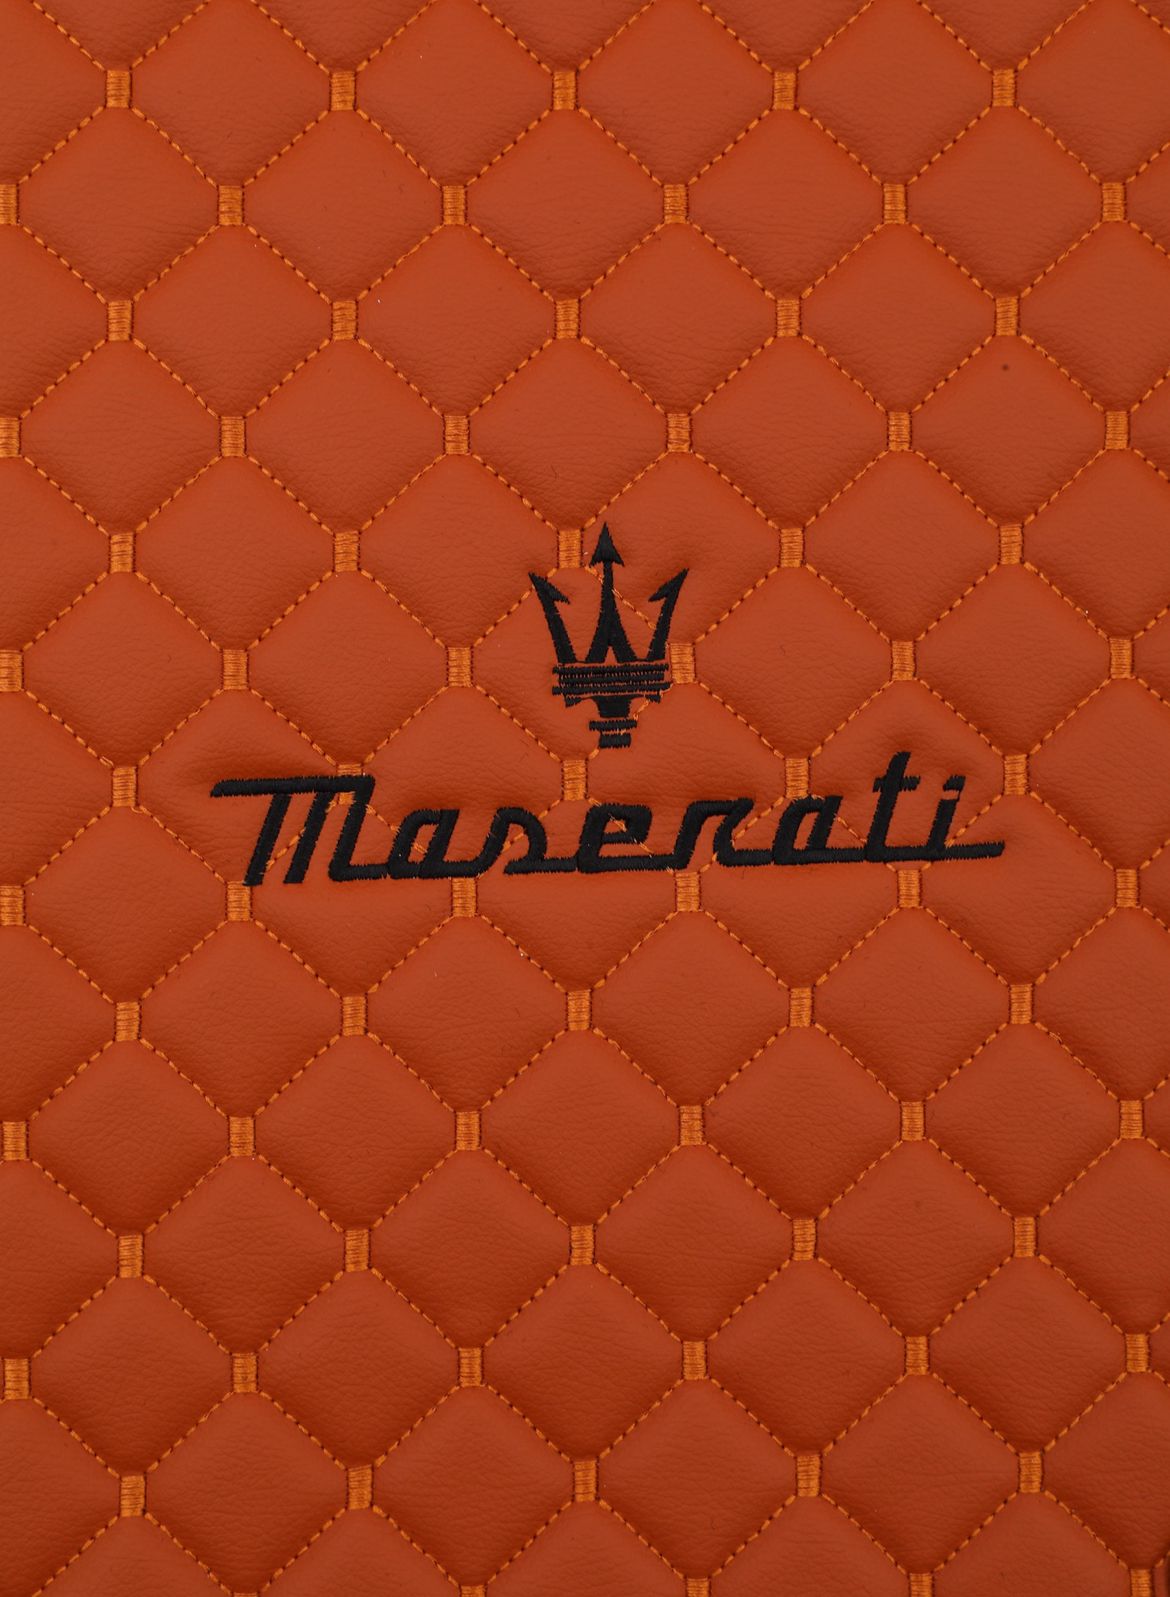 Maserati Granturismo 2007-2012 Special Design Leather Custom Car Mat 4x Set